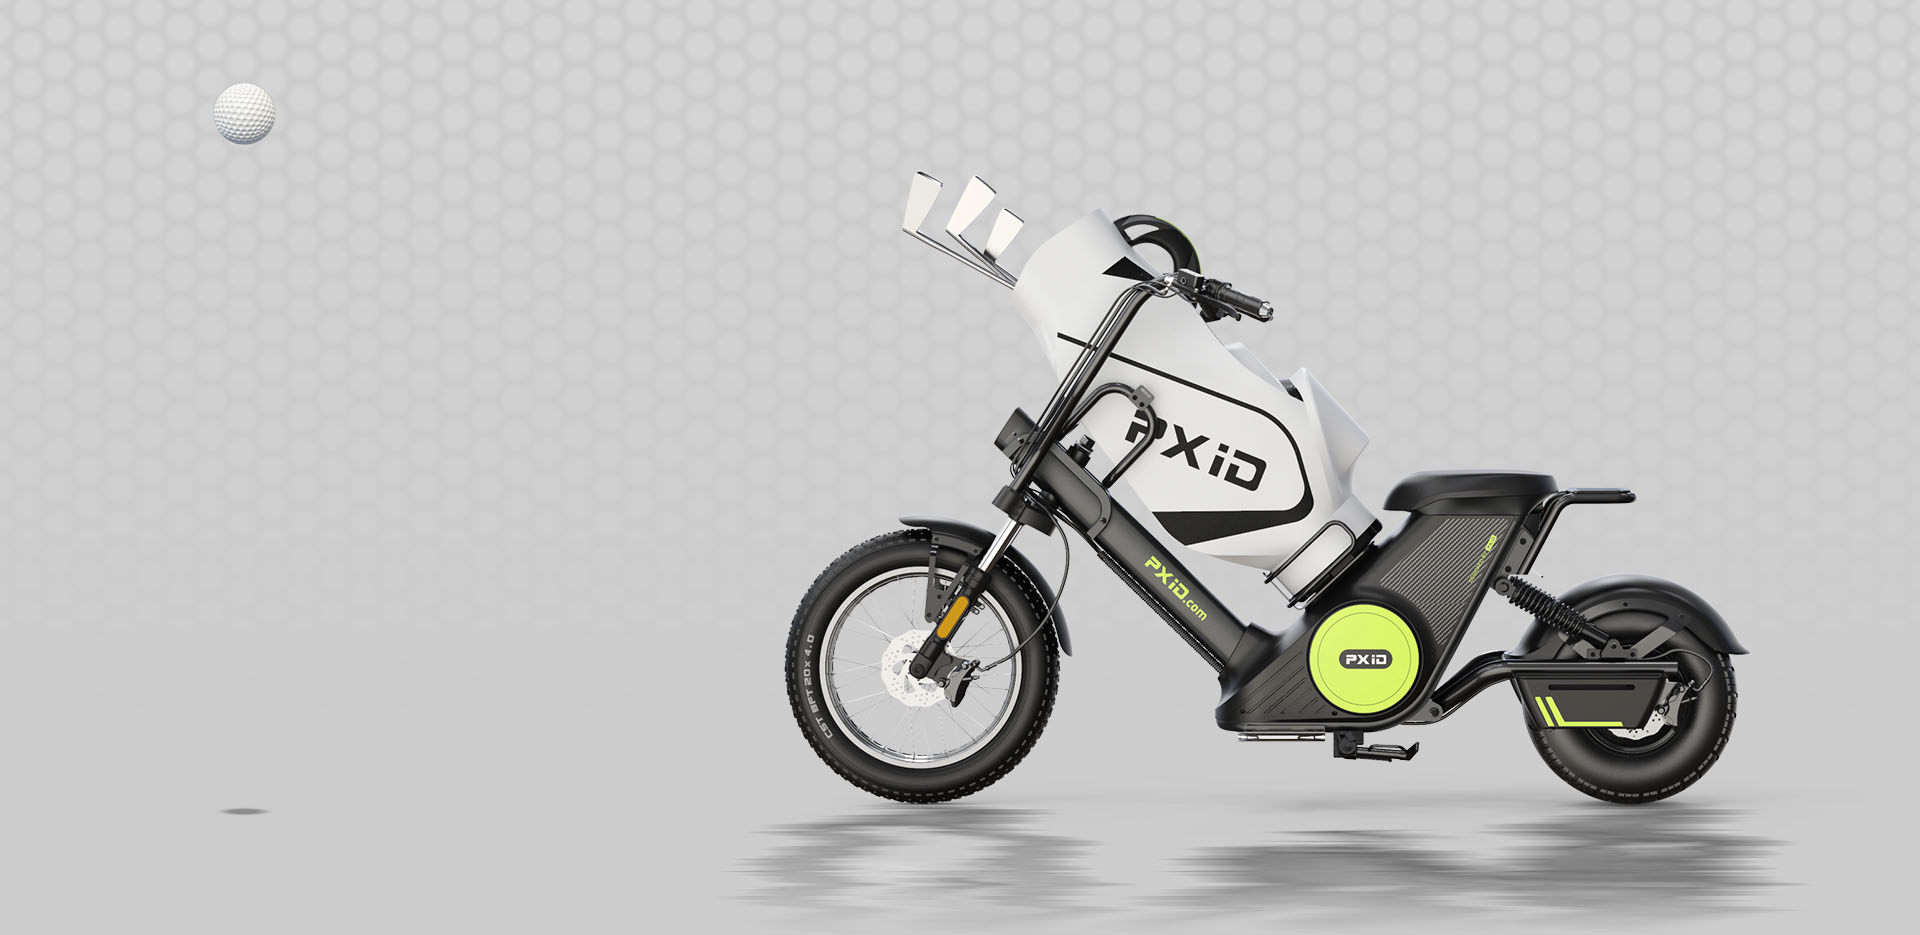 Електричний мотоцикл Citycoco зі знімною батареєю 2000 Вт із сумкою для гольфу Представлене зображення